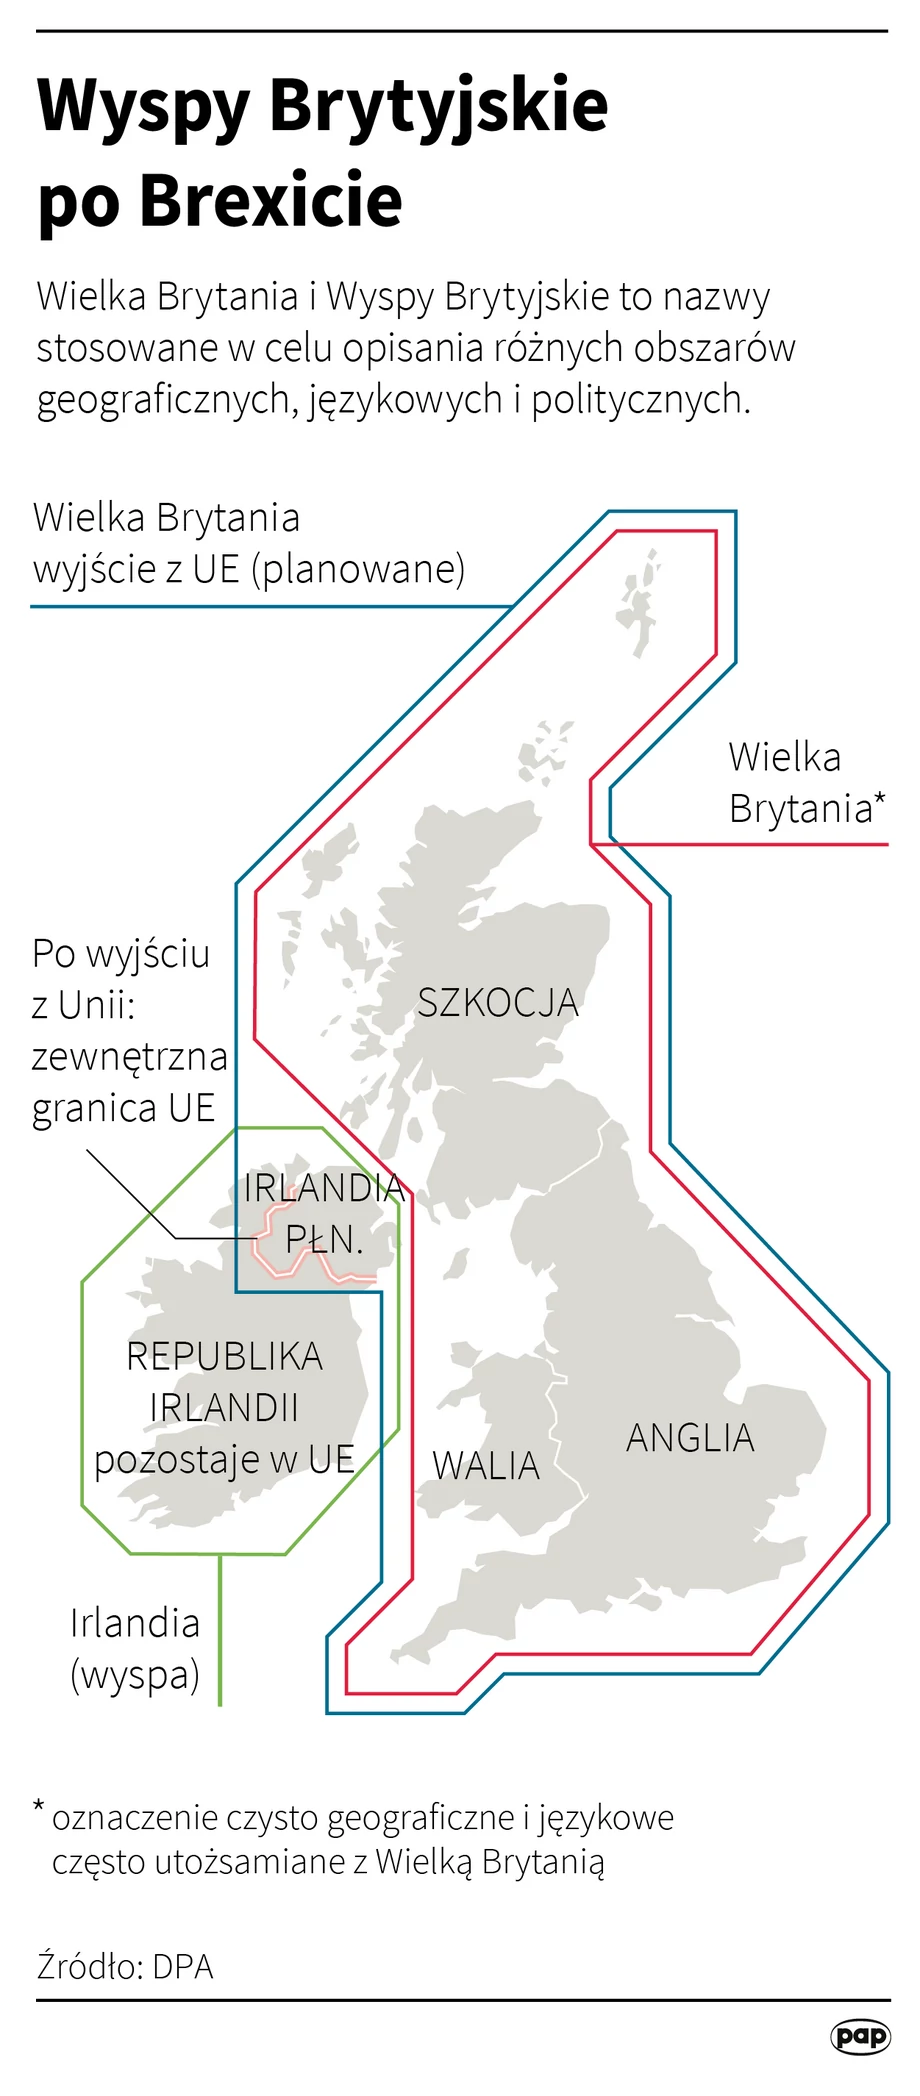 Wyspy brytyjskie po brexicie